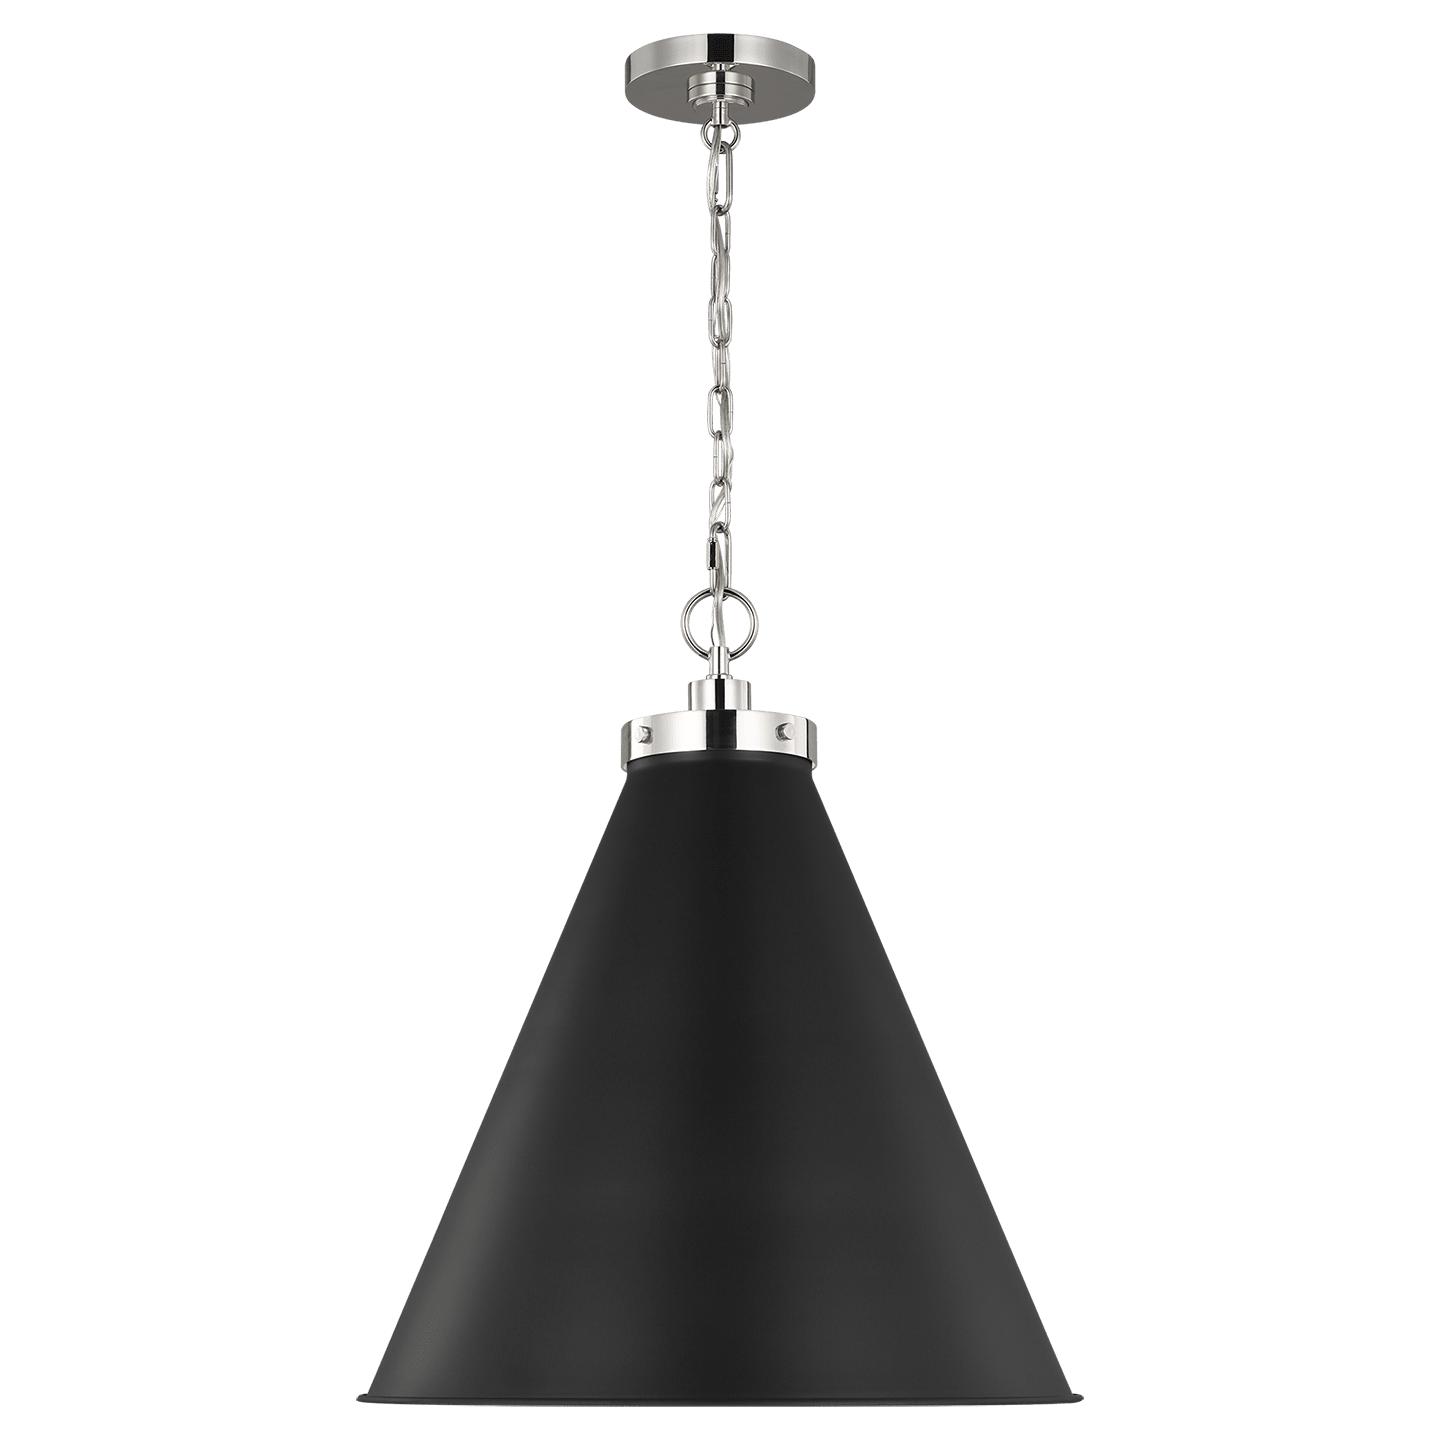 Купить Подвесной светильник Wellfleet Large Cone Pendant в интернет-магазине roooms.ru